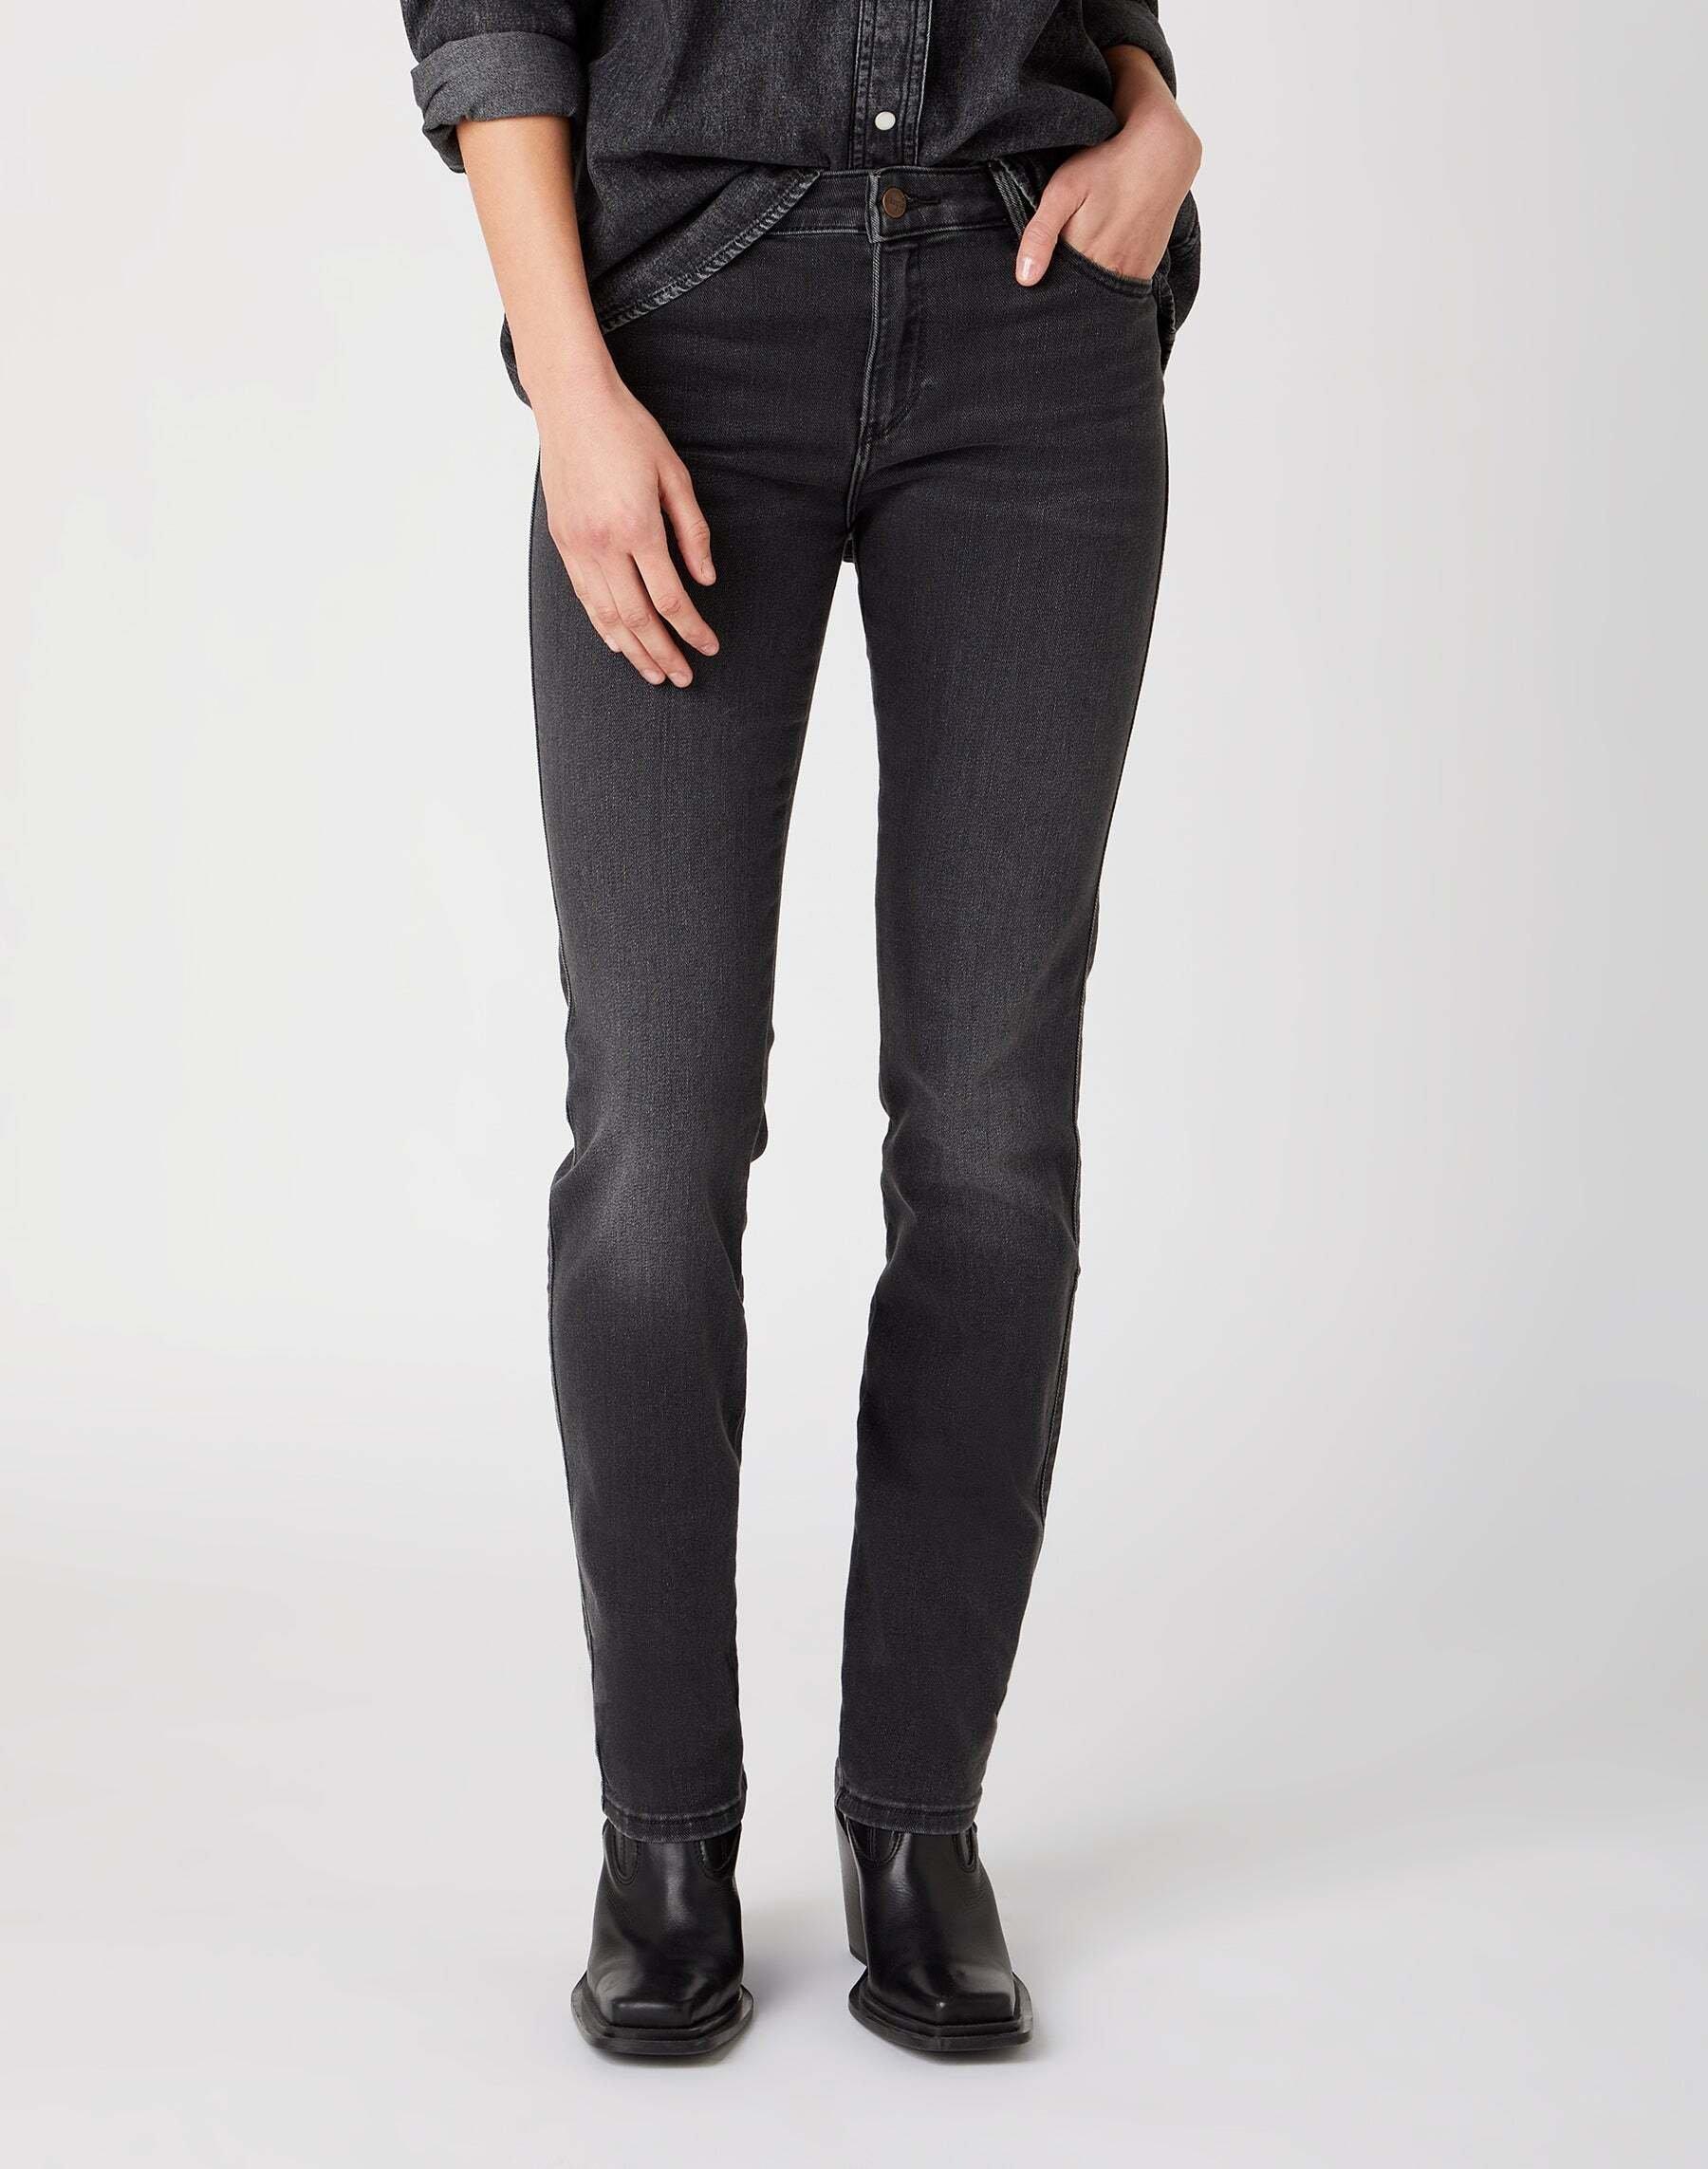 Jeans Slim Fit Slim Damen Schwarz L34/W28 von Wrangler